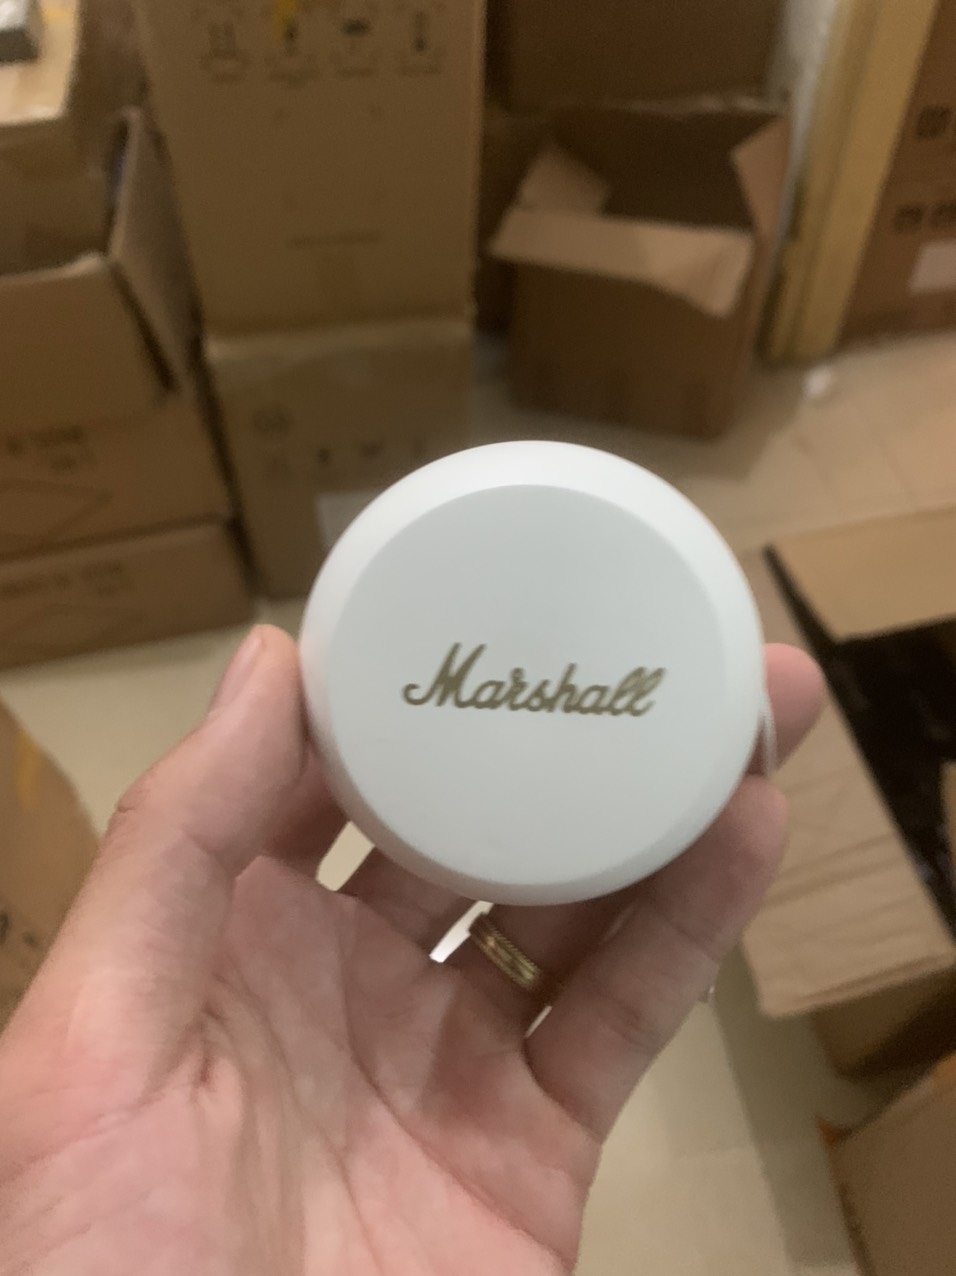 Tai nghe Marshall Tai nghe Marshall Minor (I) | Giá rẻ, ưu đãi hấp dẫn Tai nghe Marshall Bluetooth chính...